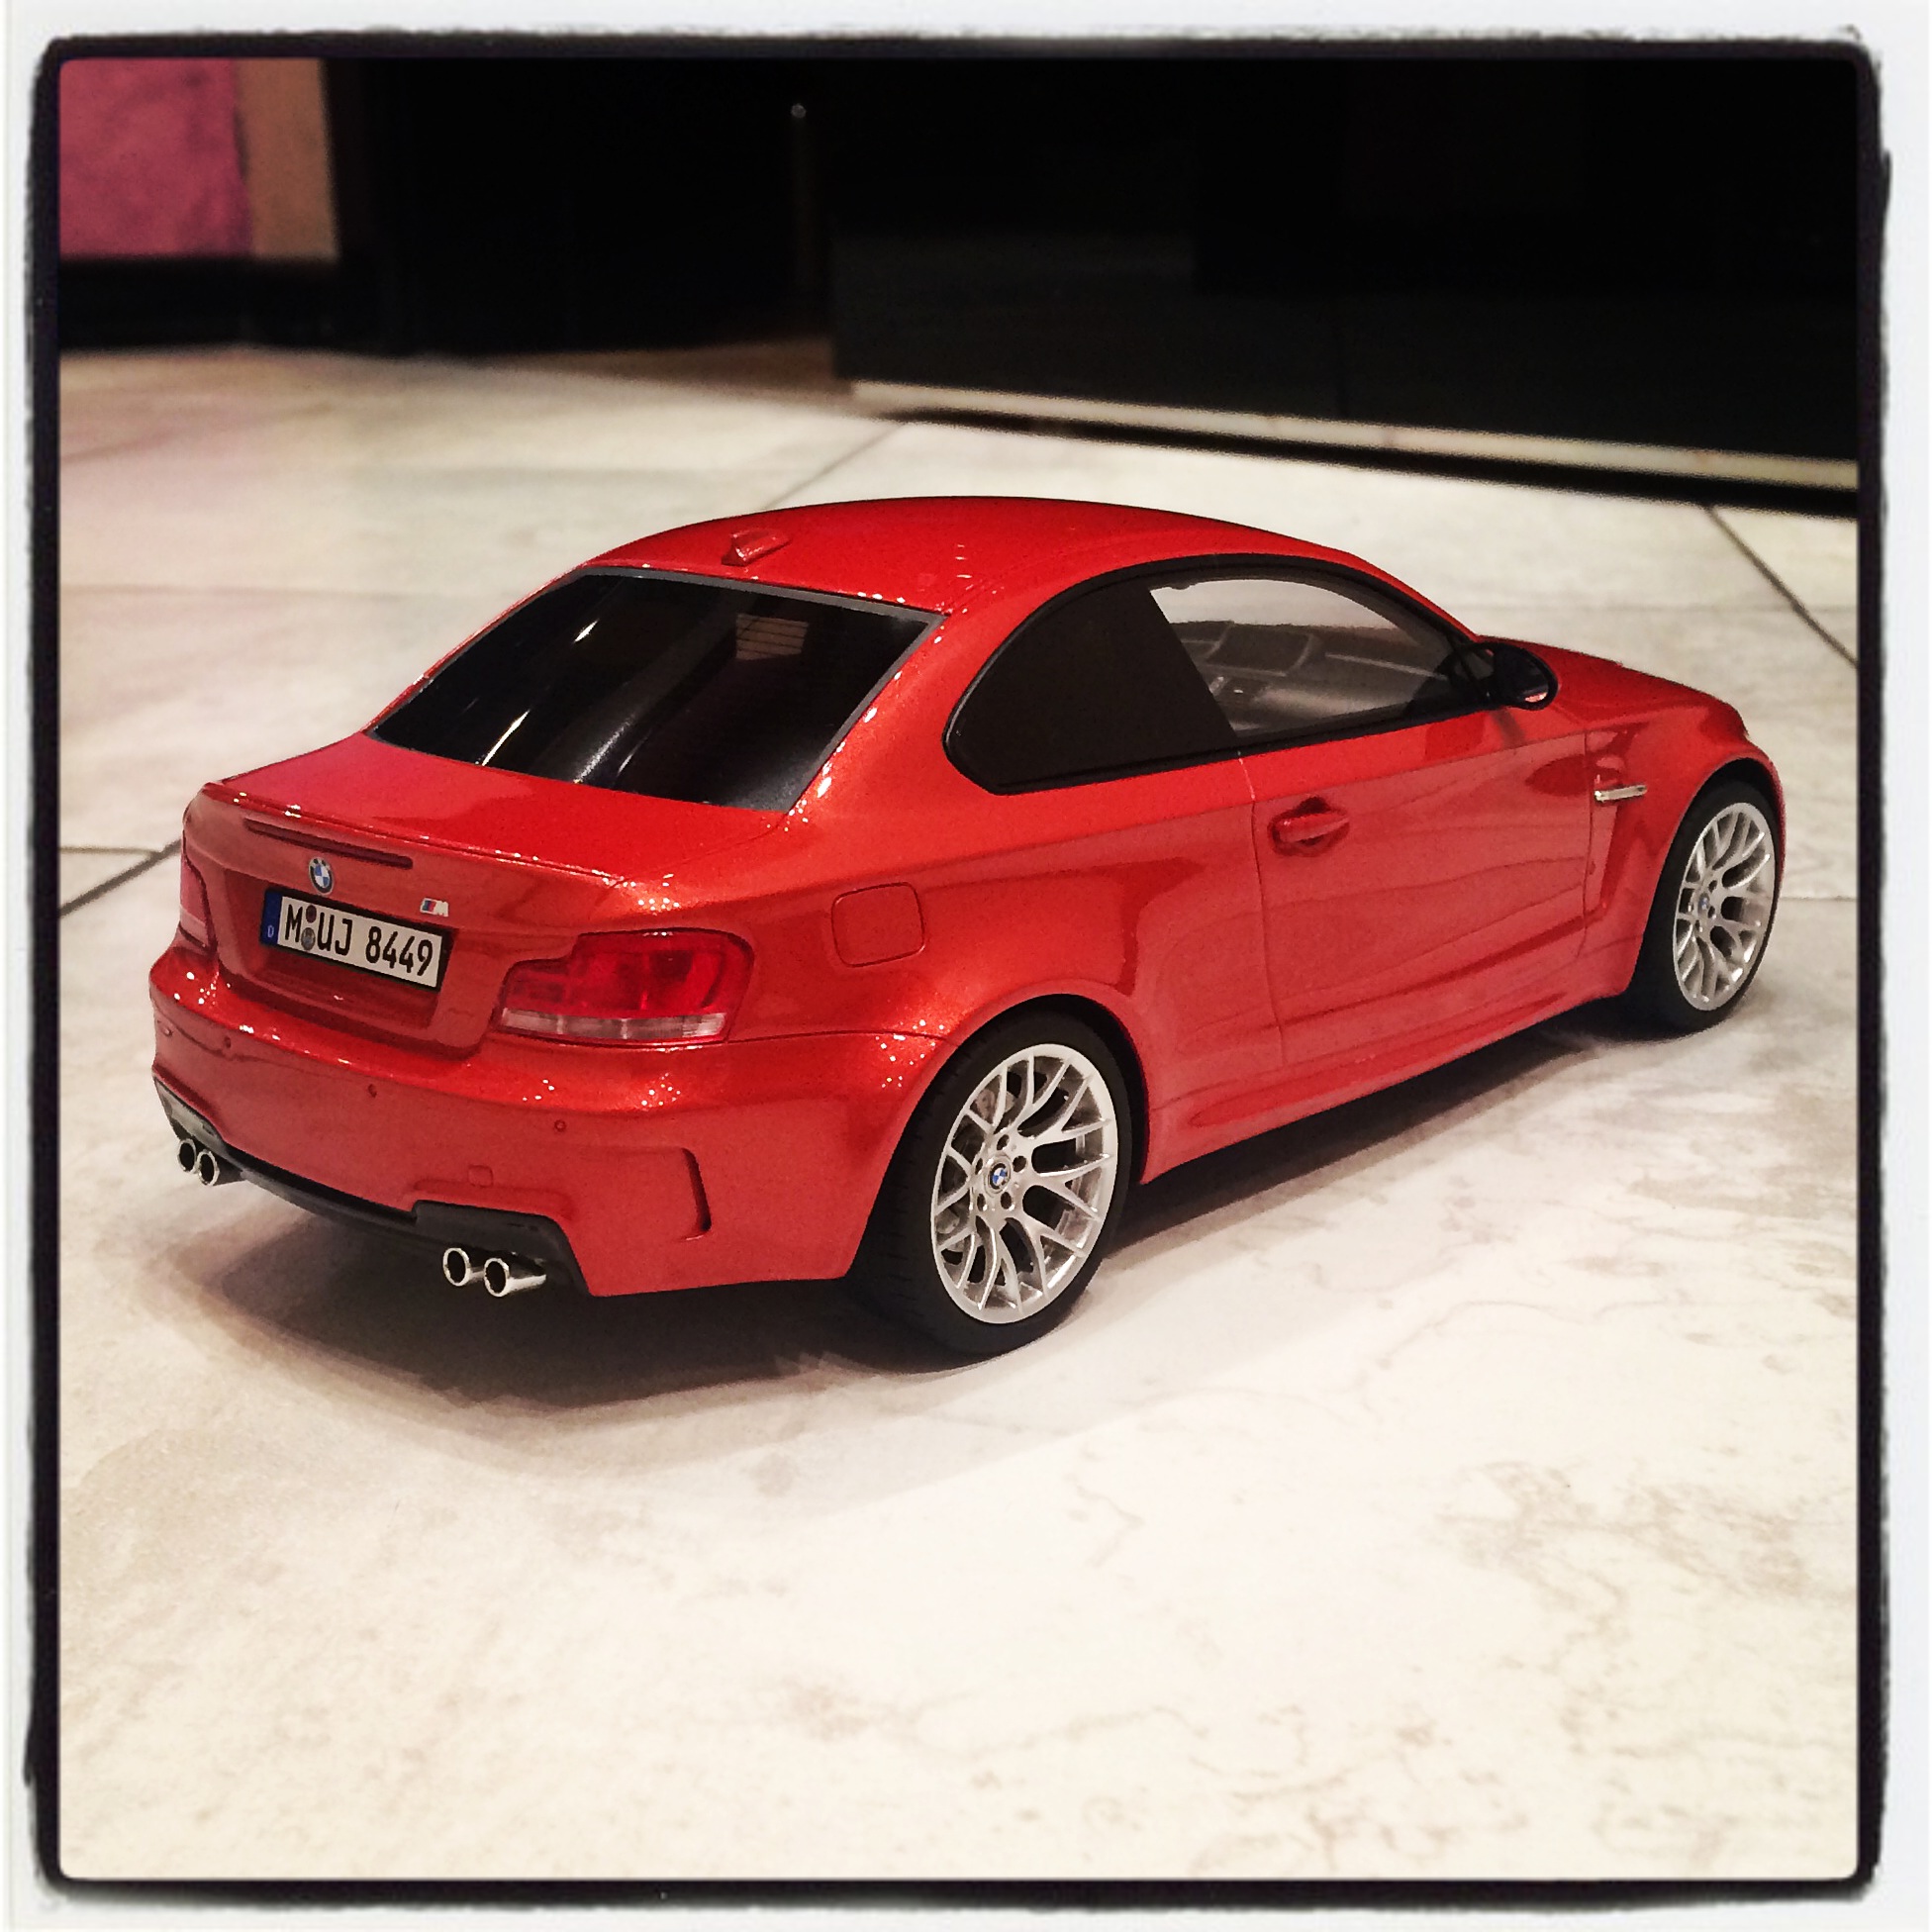 BMW 1M (E82) red, le 0725 of 1,000pcs. (gt spirit)